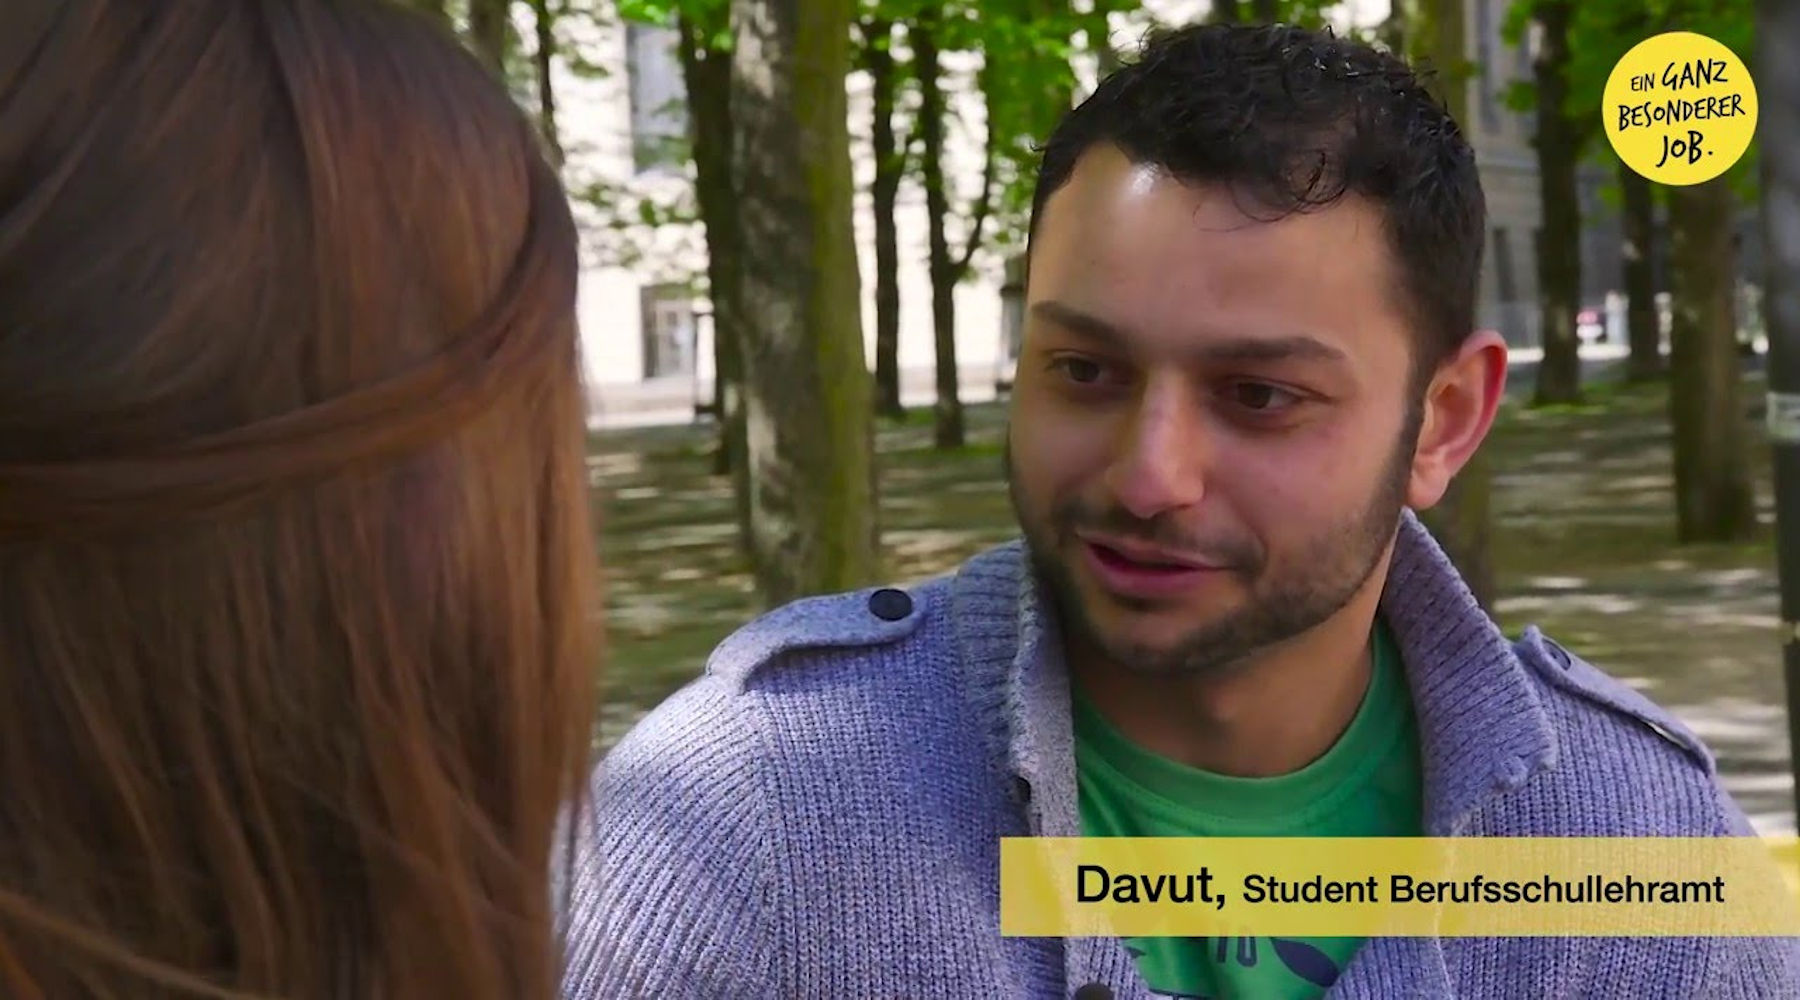 Bild von Davut, Student Berufsschullehramt, im Interview